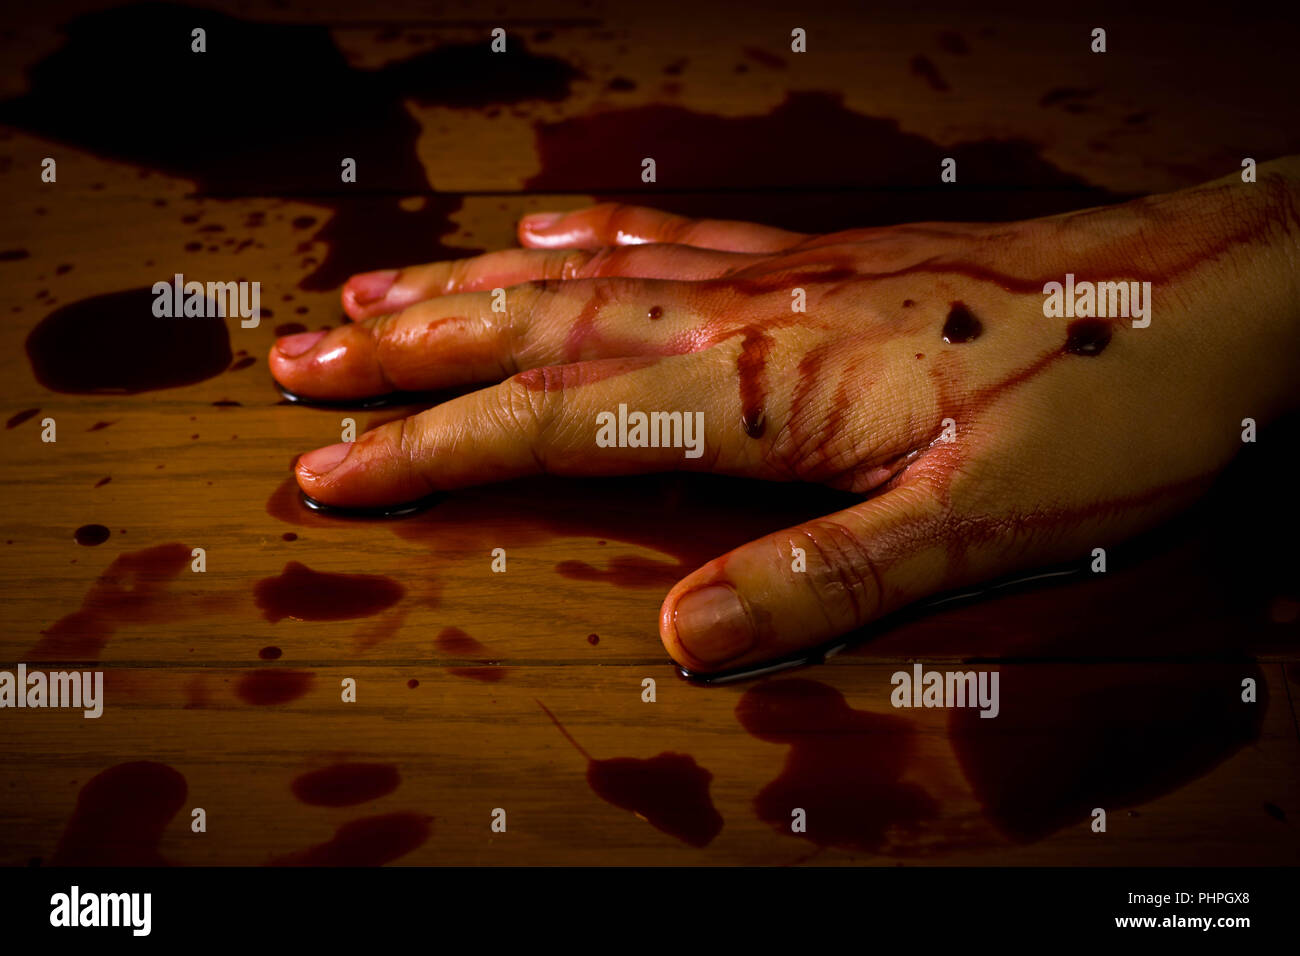 Omicidio, il suicidio o la scena del crimine. La mano di una persona morta intriso di sangue sul pavimento. Foto Stock